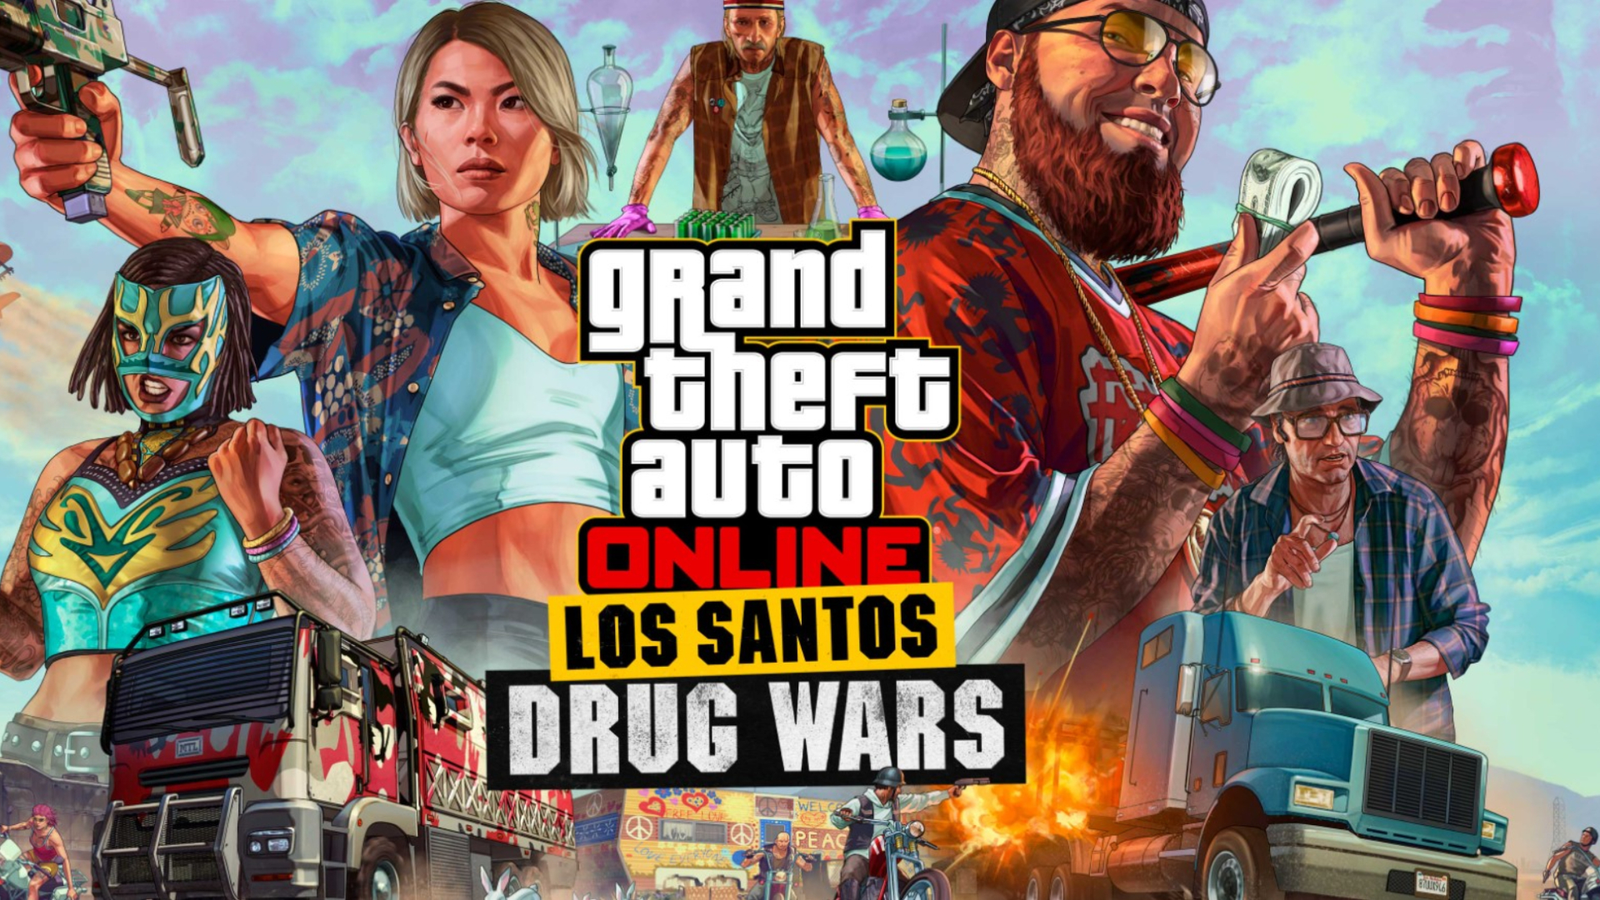 GTA Online San Andreas Mercenaries update download goes live early